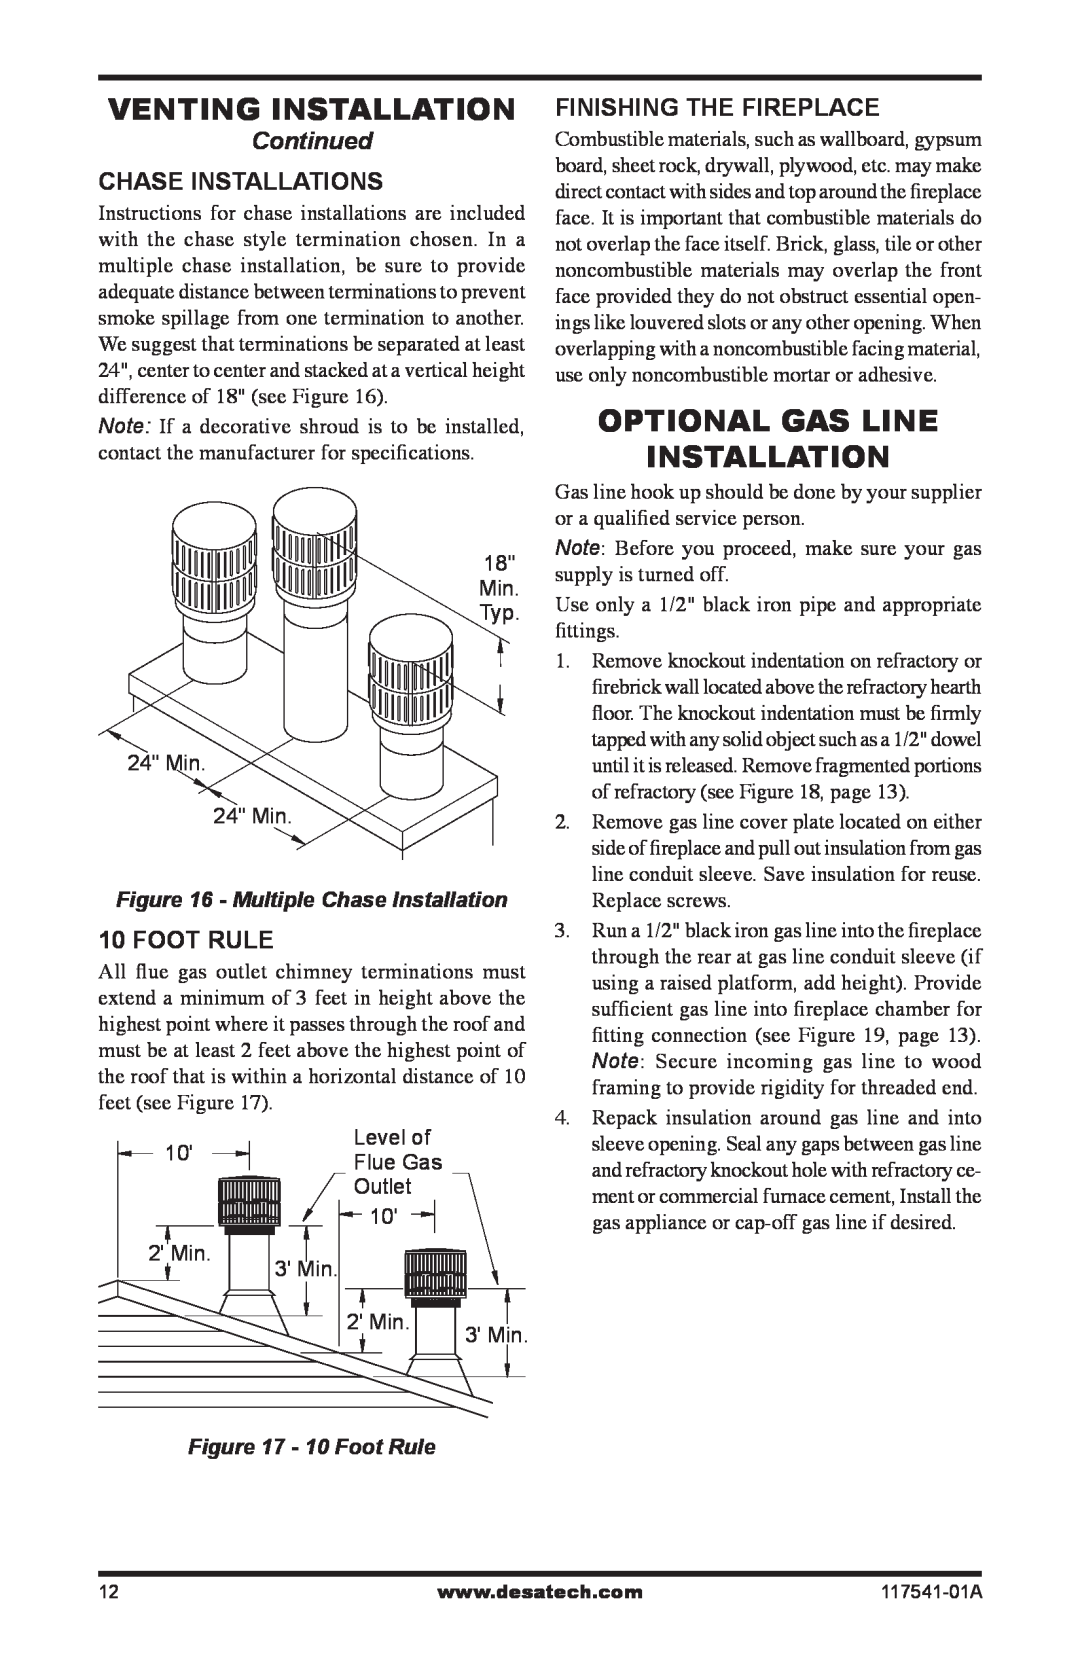 Desa (V)JM50 Venting Installation, Optional Gas Line Installation, Continued, Chase Installations, 10 Foot Rule 